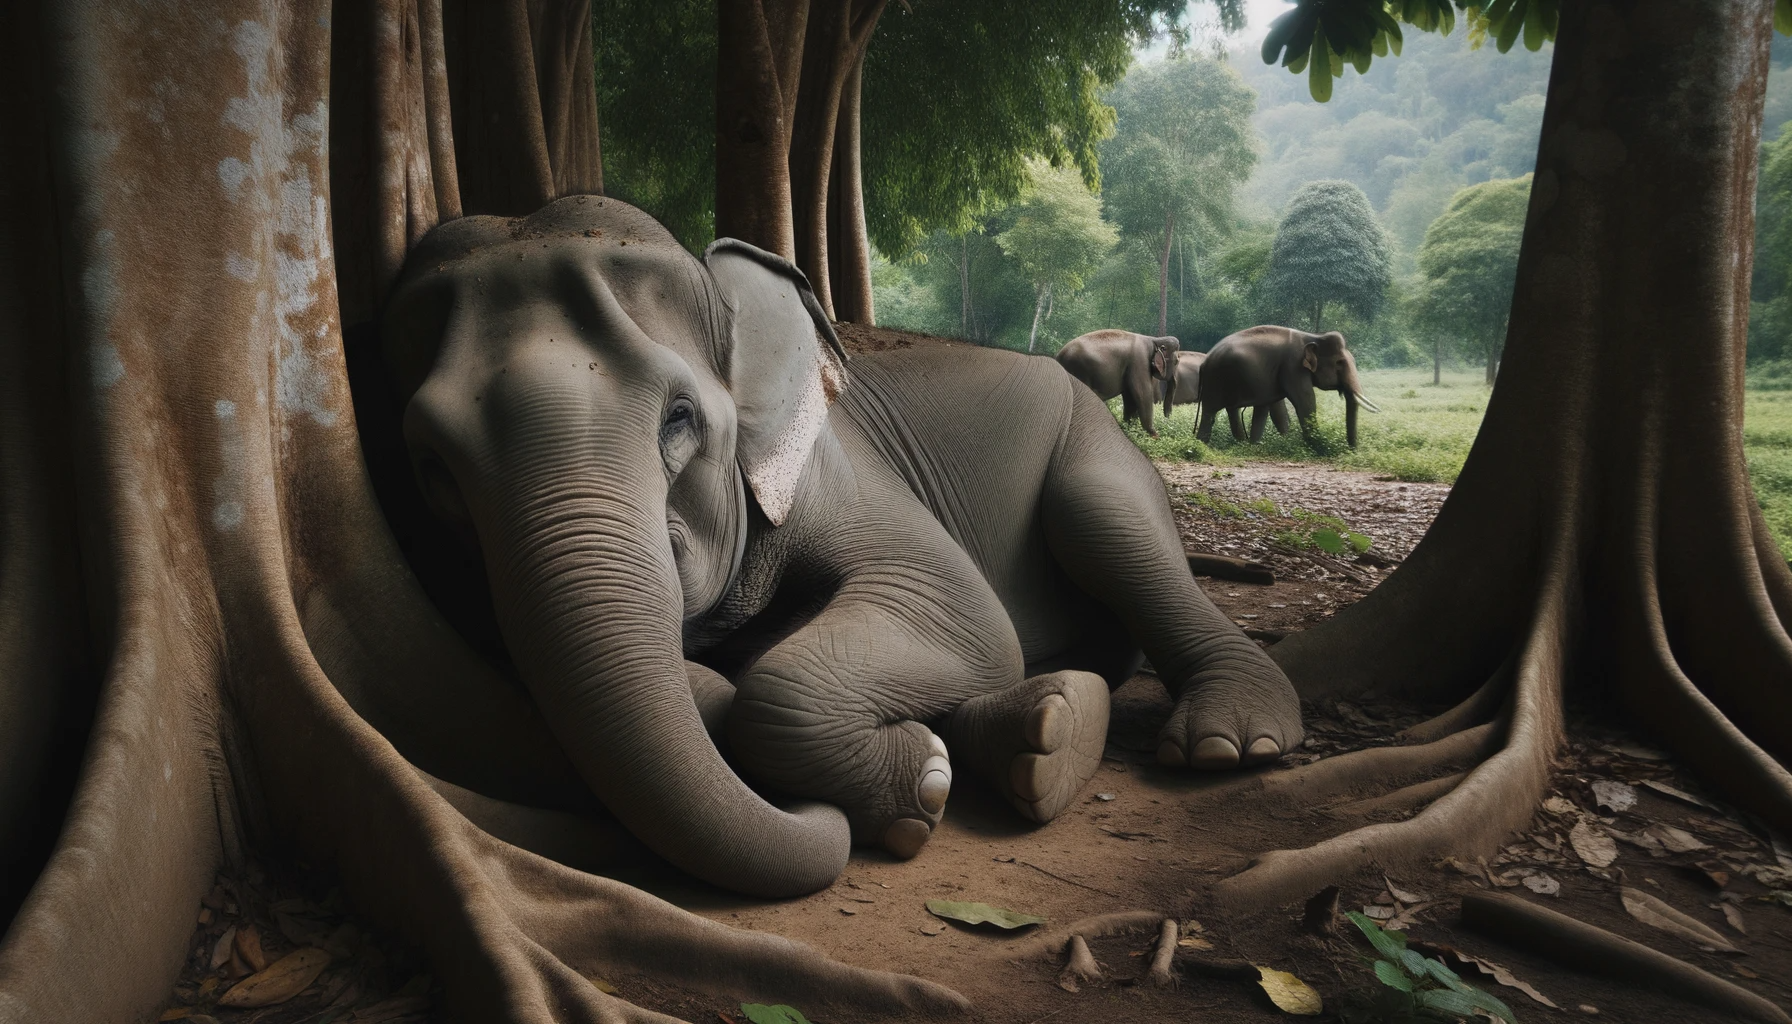 Foto von einem Elefanten, der in einem Schutzgebiet in Thailand ruht. Der Elefant liegt im Schatten eines Baumes, während andere Elefanten im Hintergr